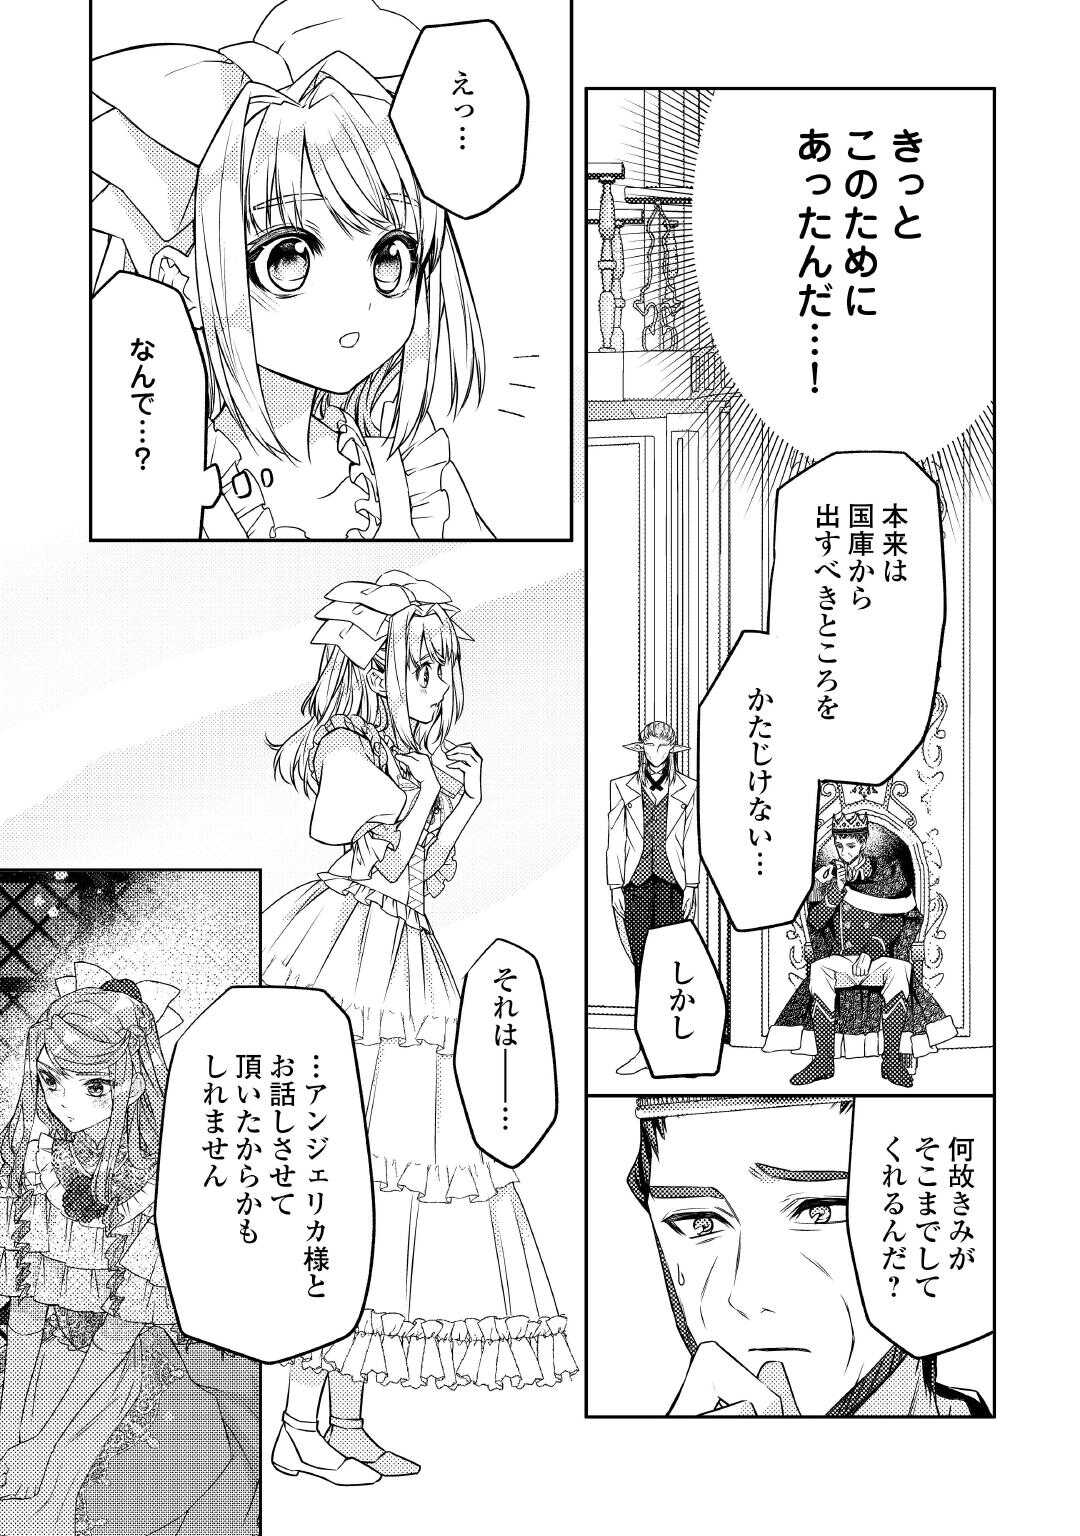 Toaru Chisana Mura No Chi Tona Tanya Ya San - Chapter 20 - Page 3